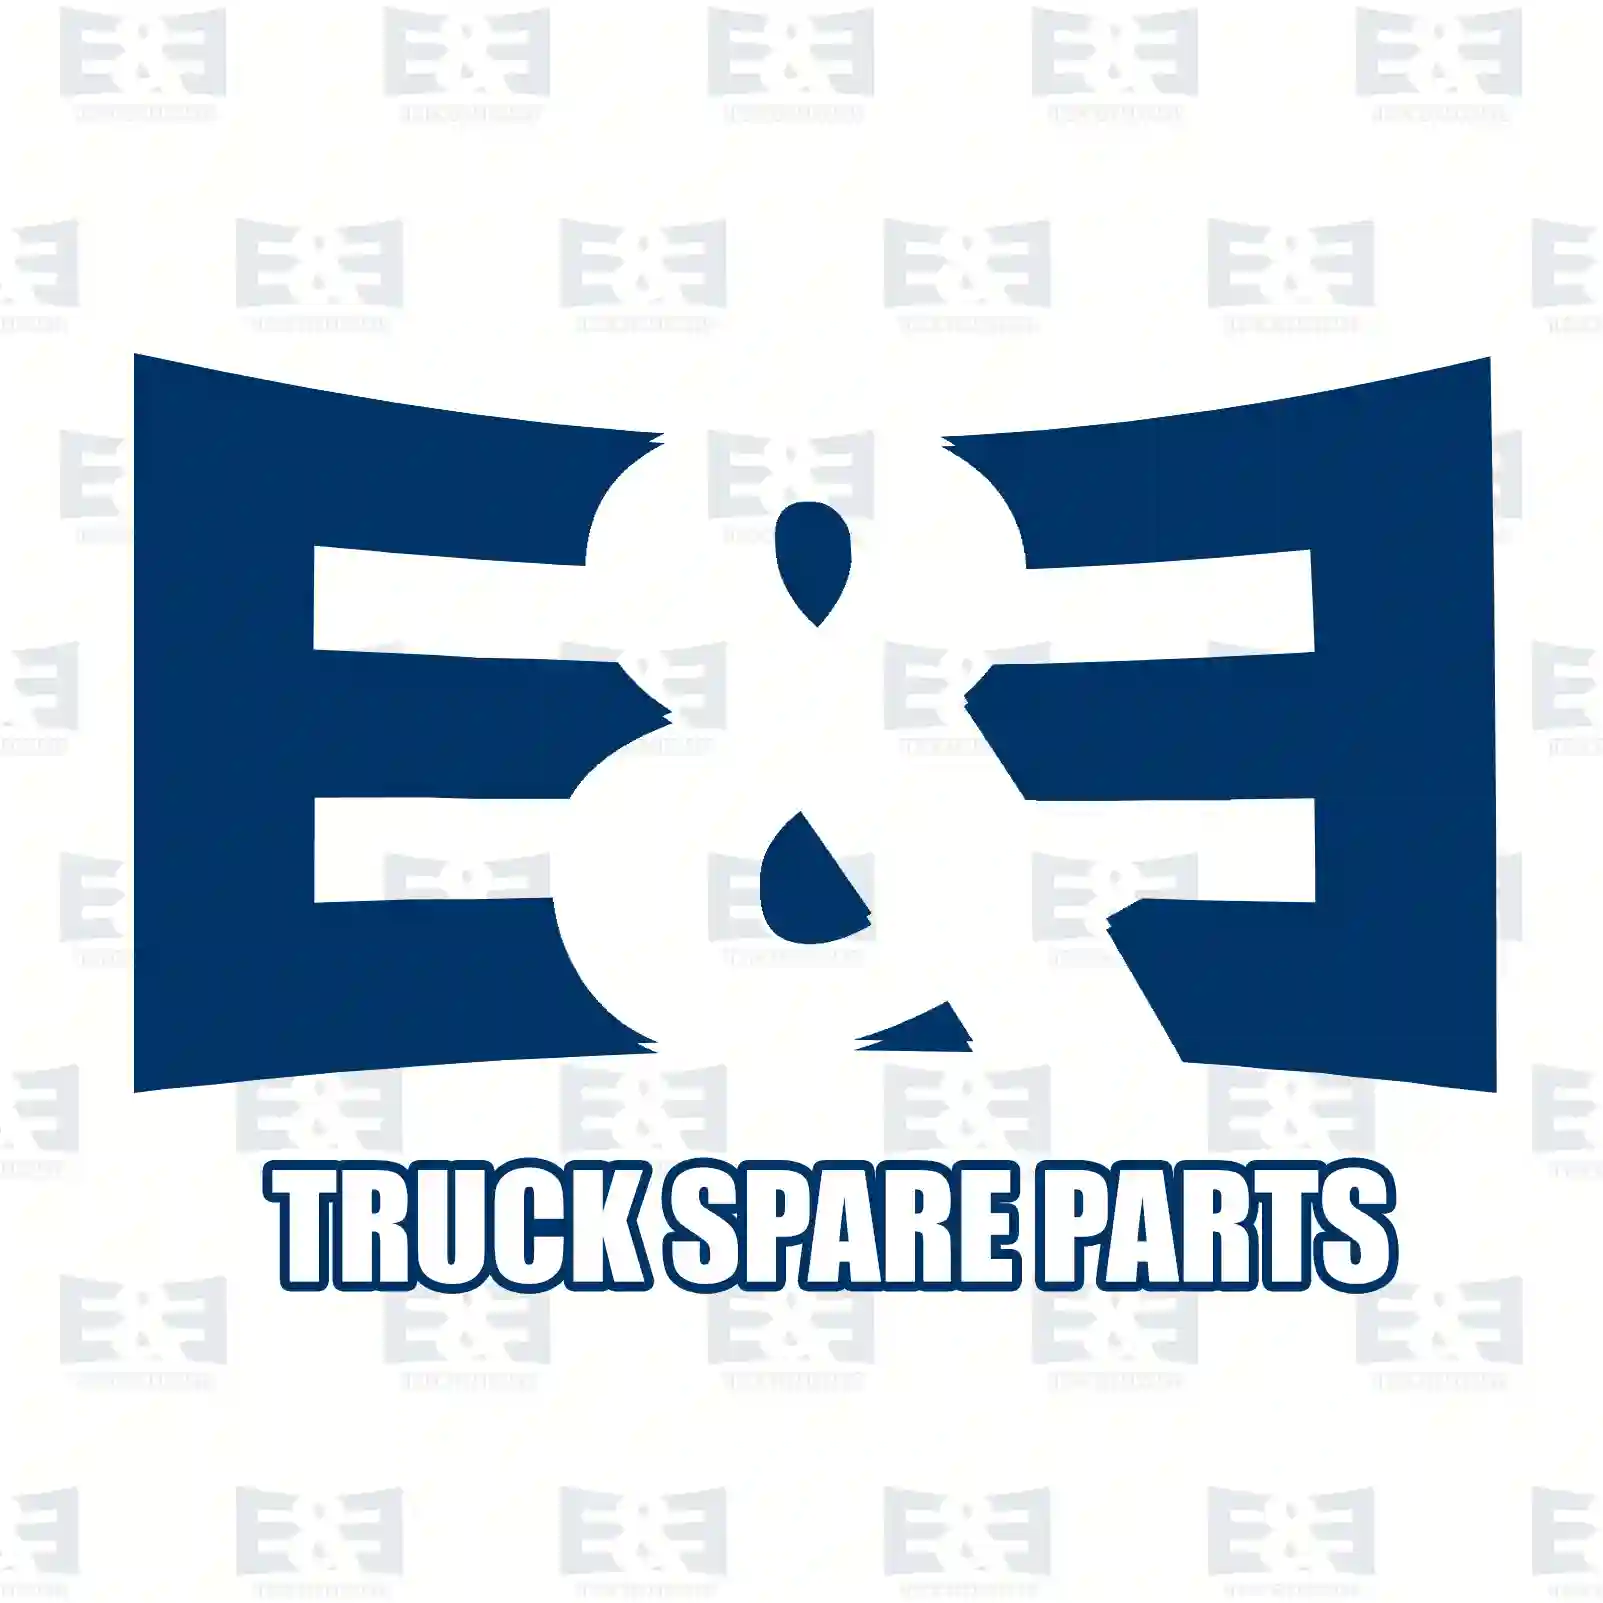 Double valve, 2E2278488, 9702600457, 9452600057, 9452601457, 9702600457, 9702601057 ||  2E2278488 E&E Truck Spare Parts | Truck Spare Parts, Auotomotive Spare Parts Double valve, 2E2278488, 9702600457, 9452600057, 9452601457, 9702600457, 9702601057 ||  2E2278488 E&E Truck Spare Parts | Truck Spare Parts, Auotomotive Spare Parts